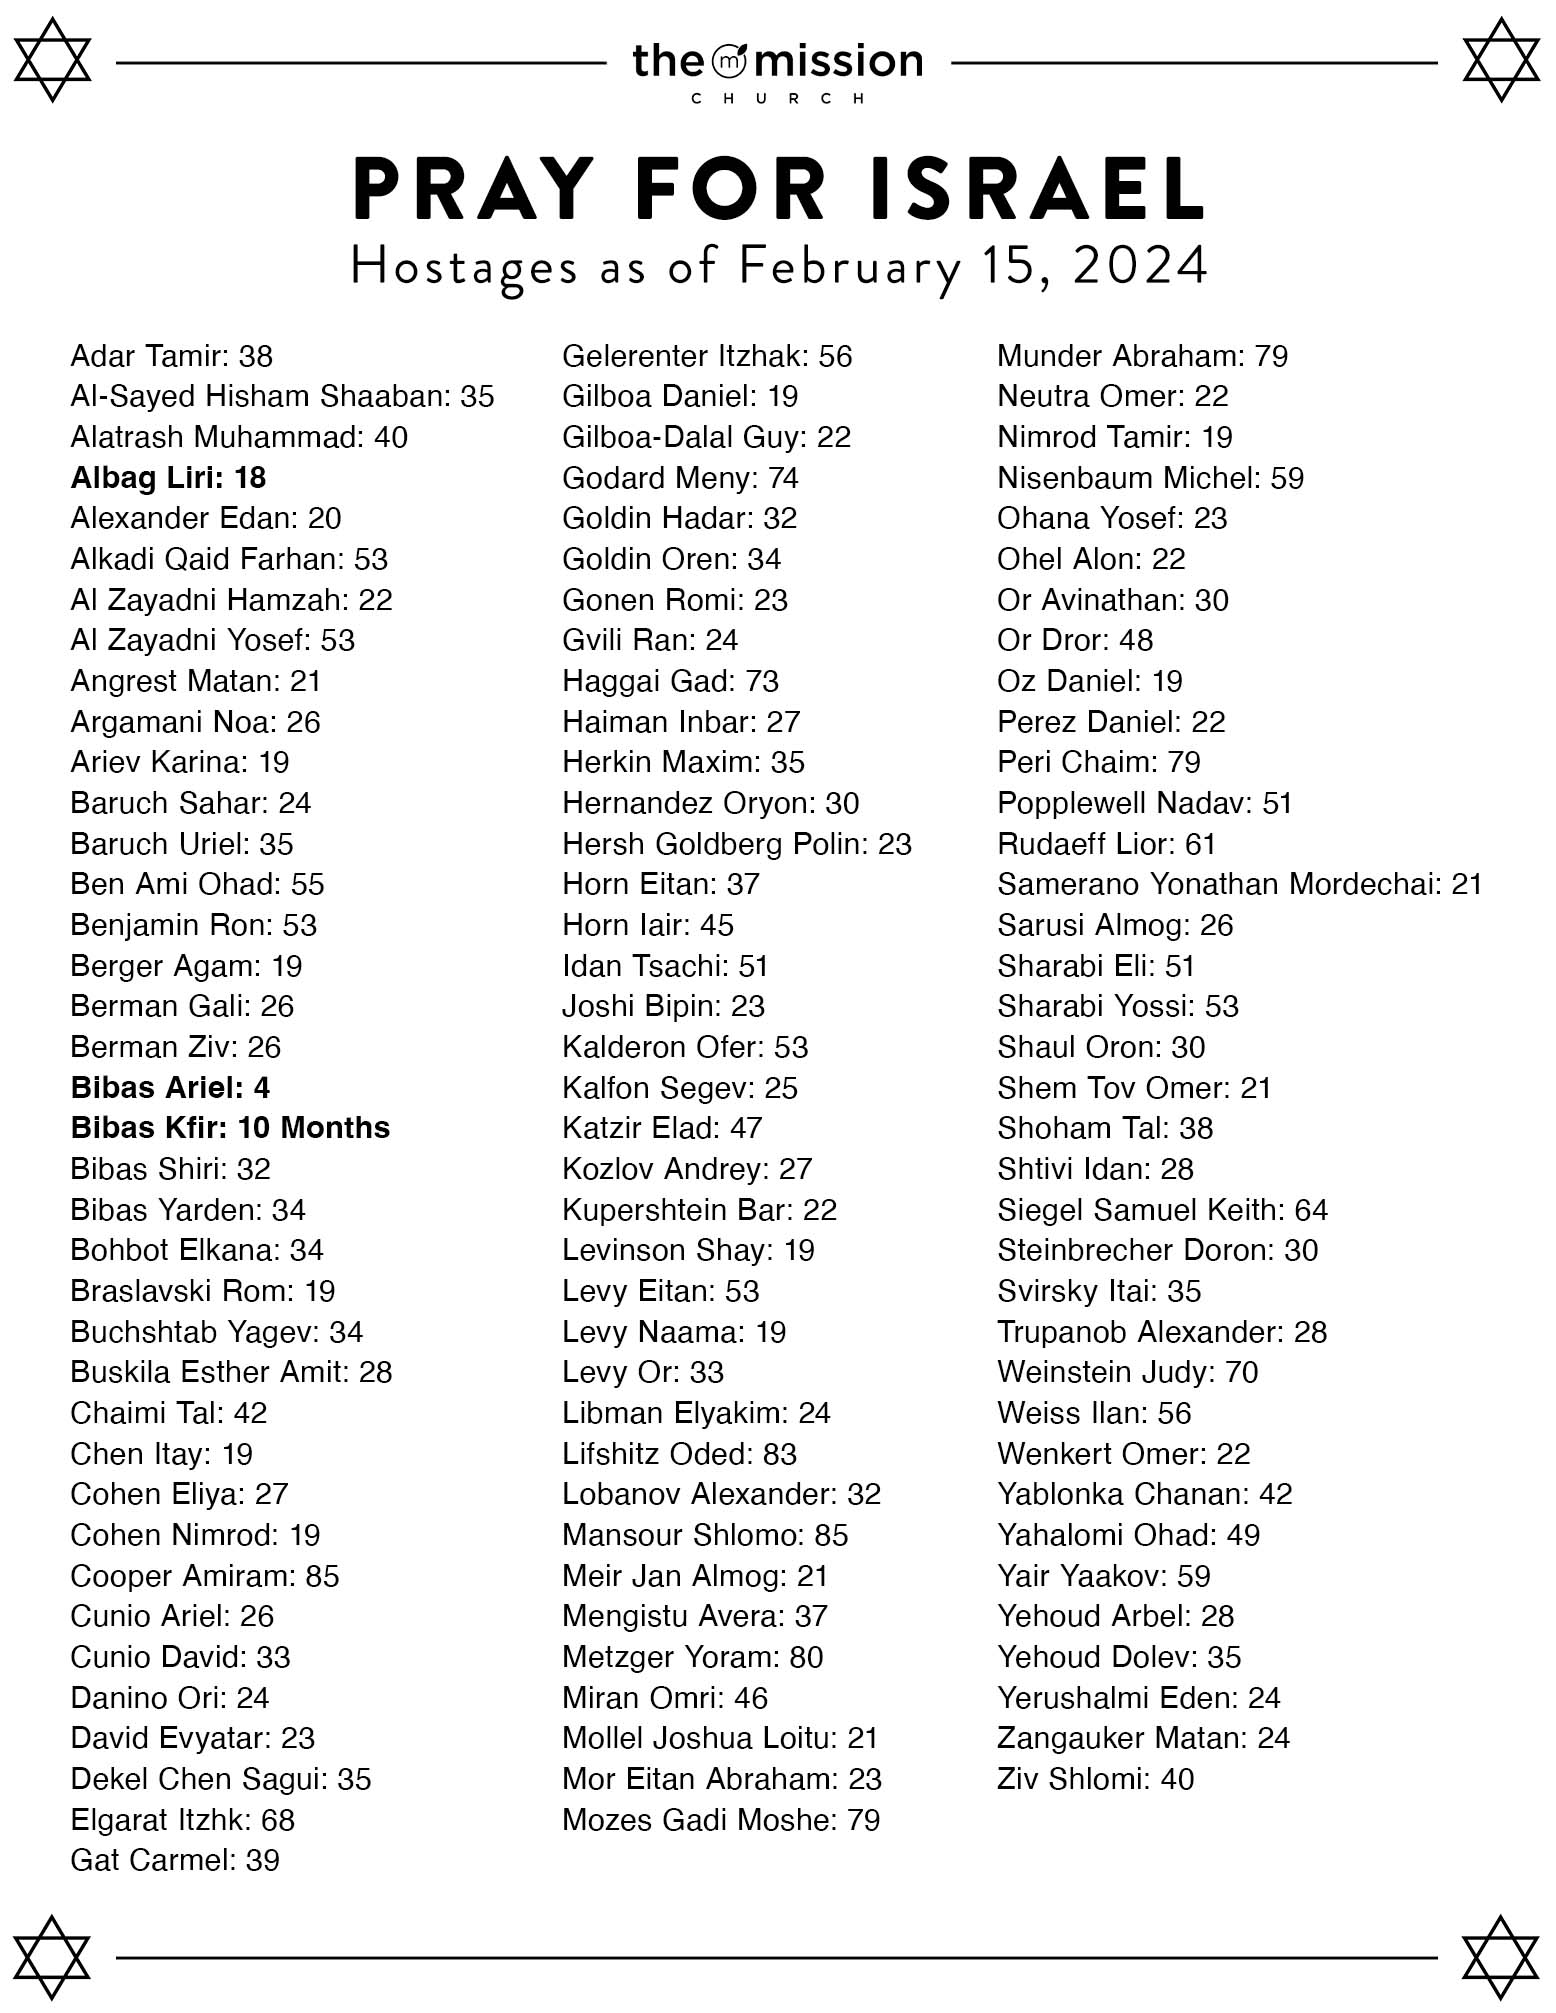 Israel Hostage List February 2024